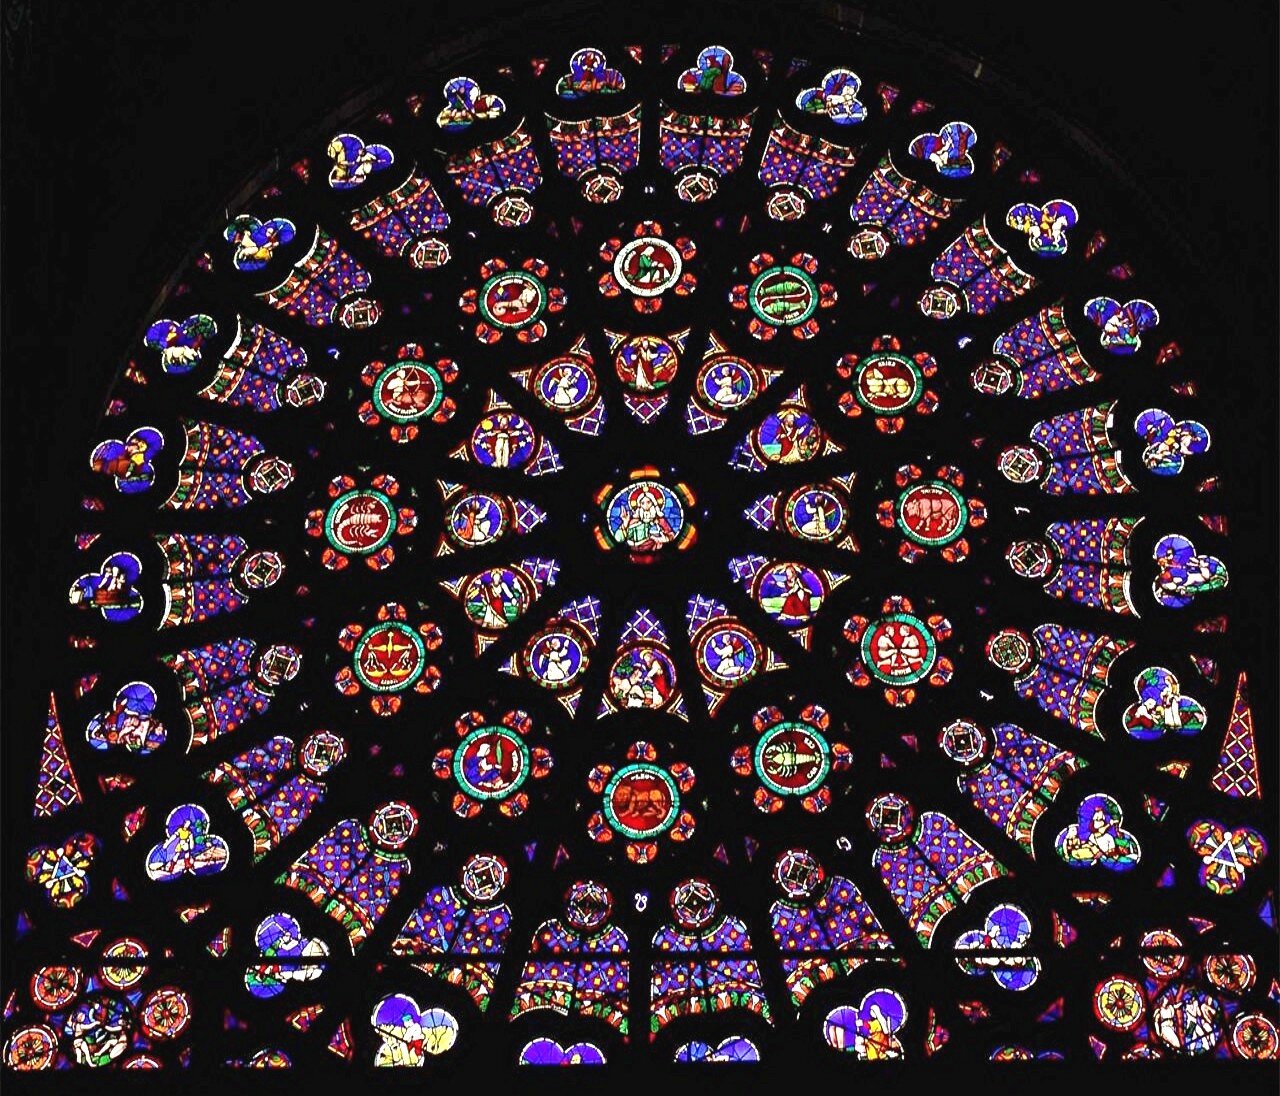 Widok na północną rozetę w kościele Saint Denis, zespół Stworzenia Źródło: TTaylor, Widok na północną rozetę w kościele Saint Denis, zespół Stworzenia, licencja: CC BY-SA 3.0.